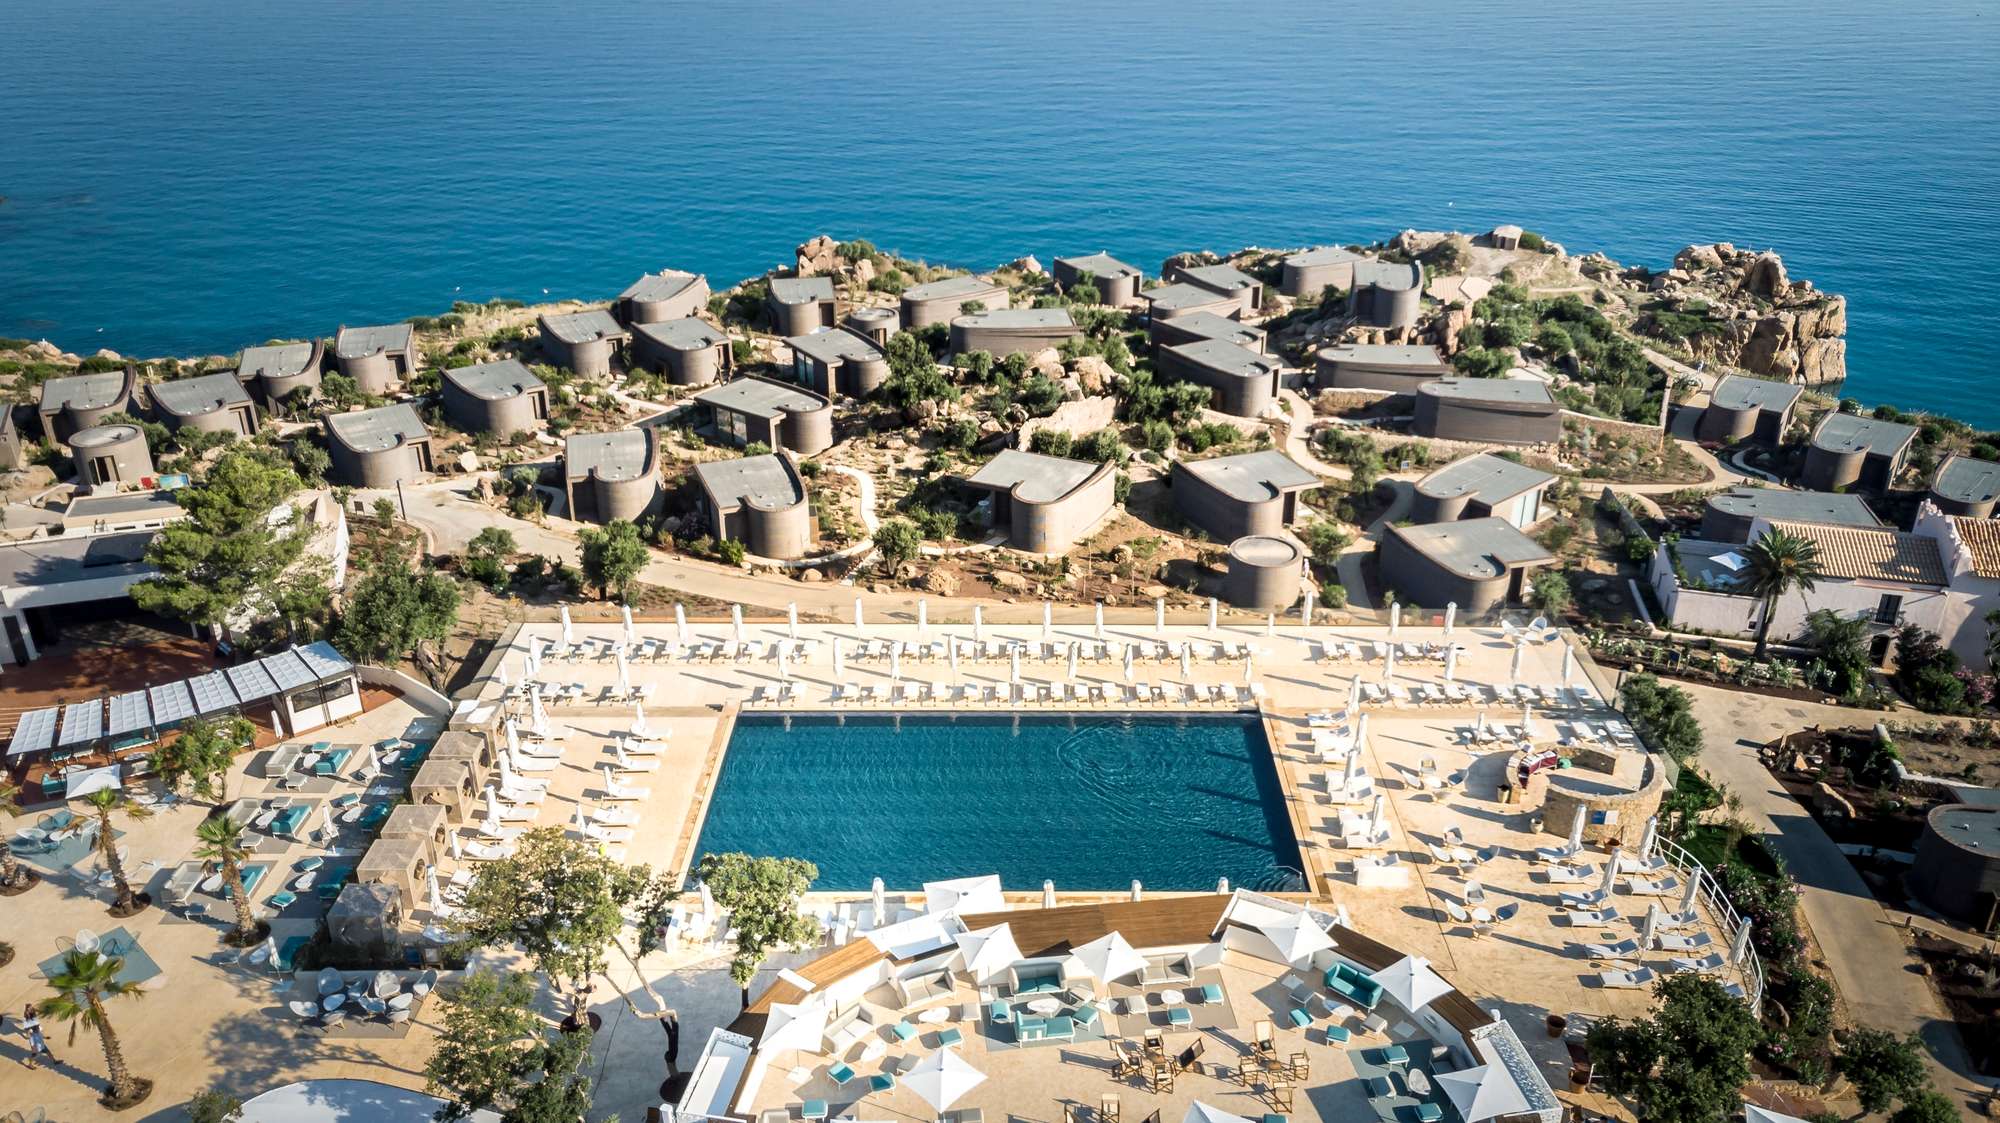 Club Med Resort Cefalu